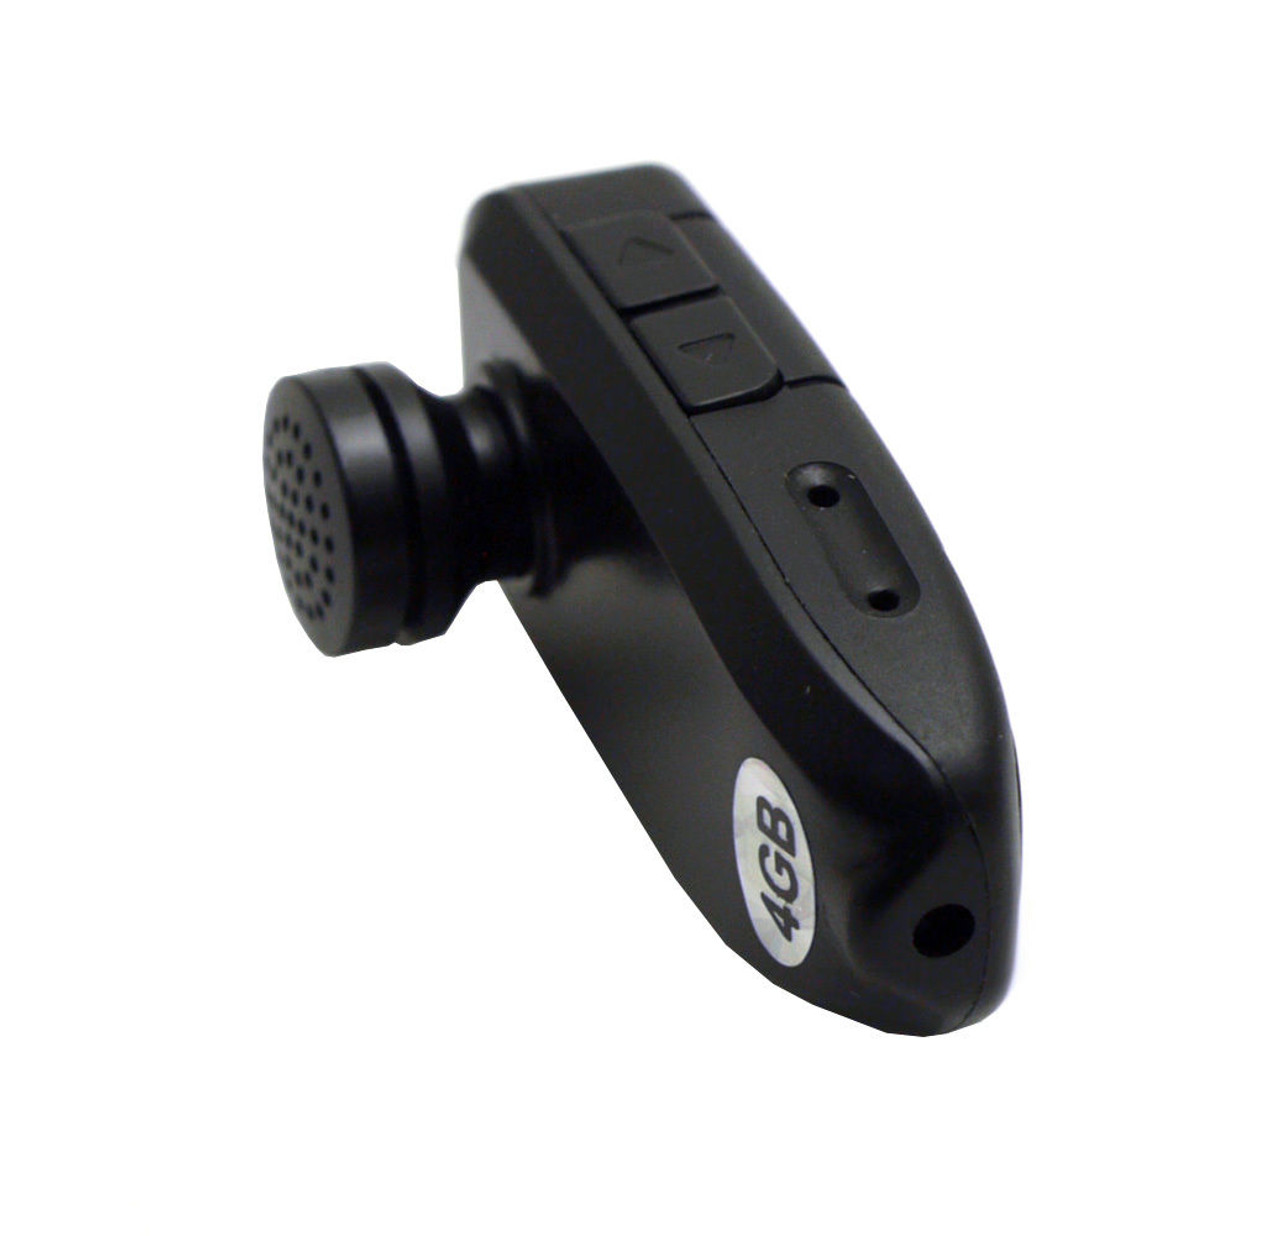 Ordinary Bluetooth Earpiece Spy Hidden Security Camera and AUDIO DVR 4 GB